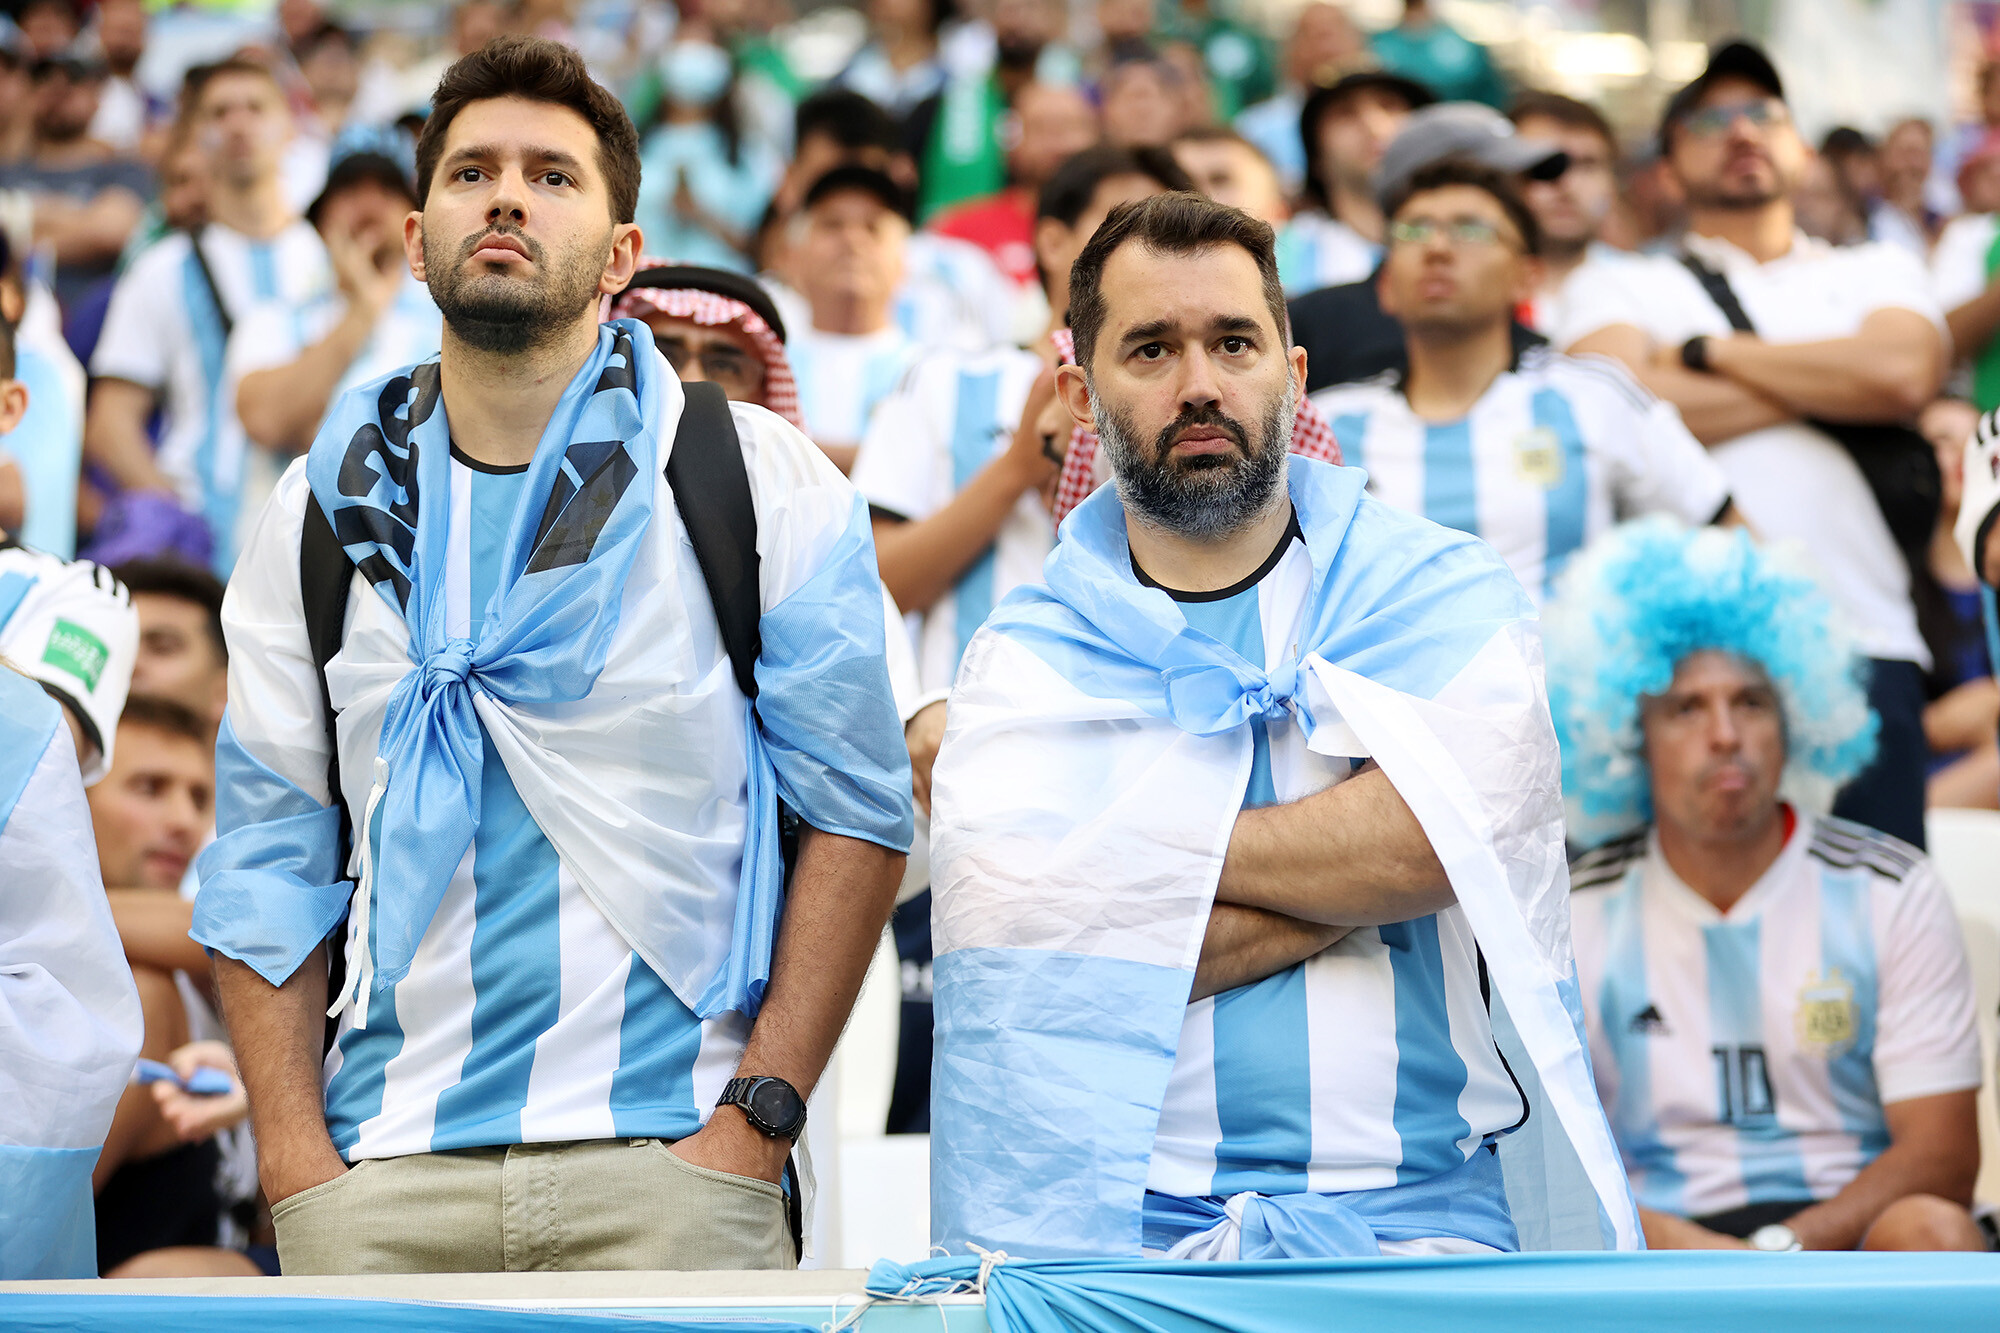 Cổ động viên Argentina tại World Cup 2022 khi thua trận trướcCổ động viên Argentina tại World Cup 2022 khi thua trận trước Arab Saudi Arab Saudi